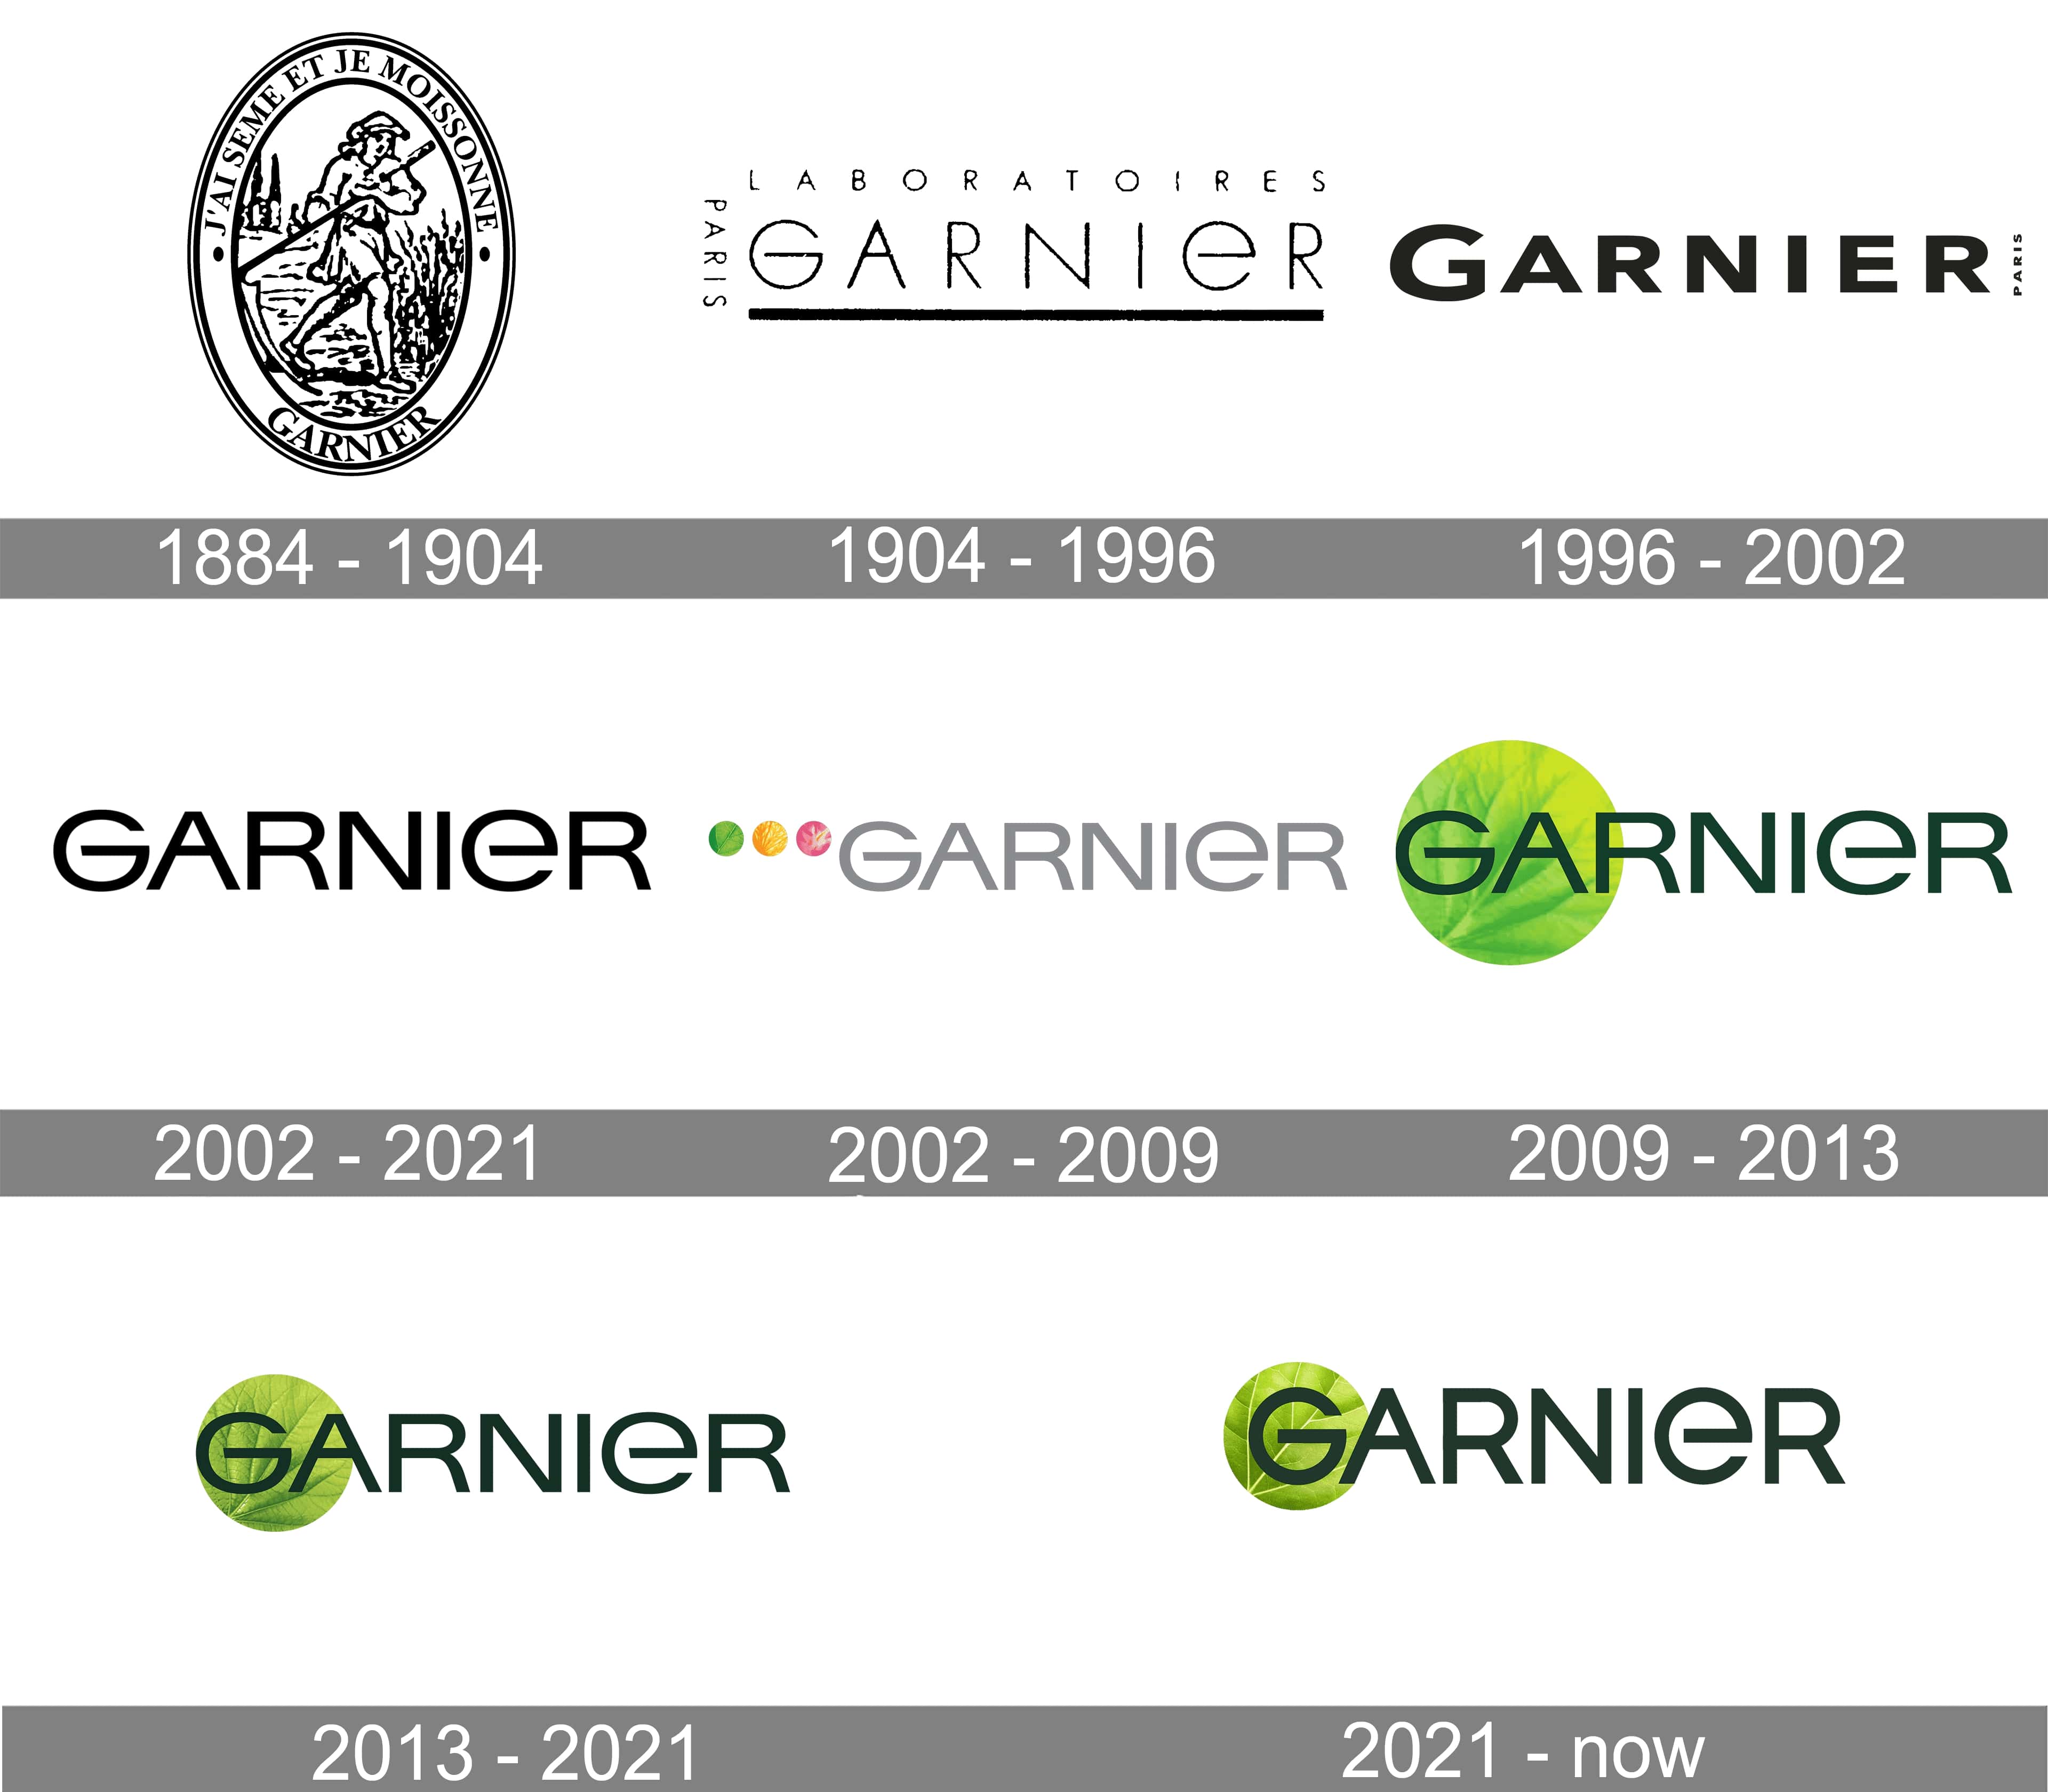 Mẫu thiết kế logo thương hiệu công ty GARNIER 2